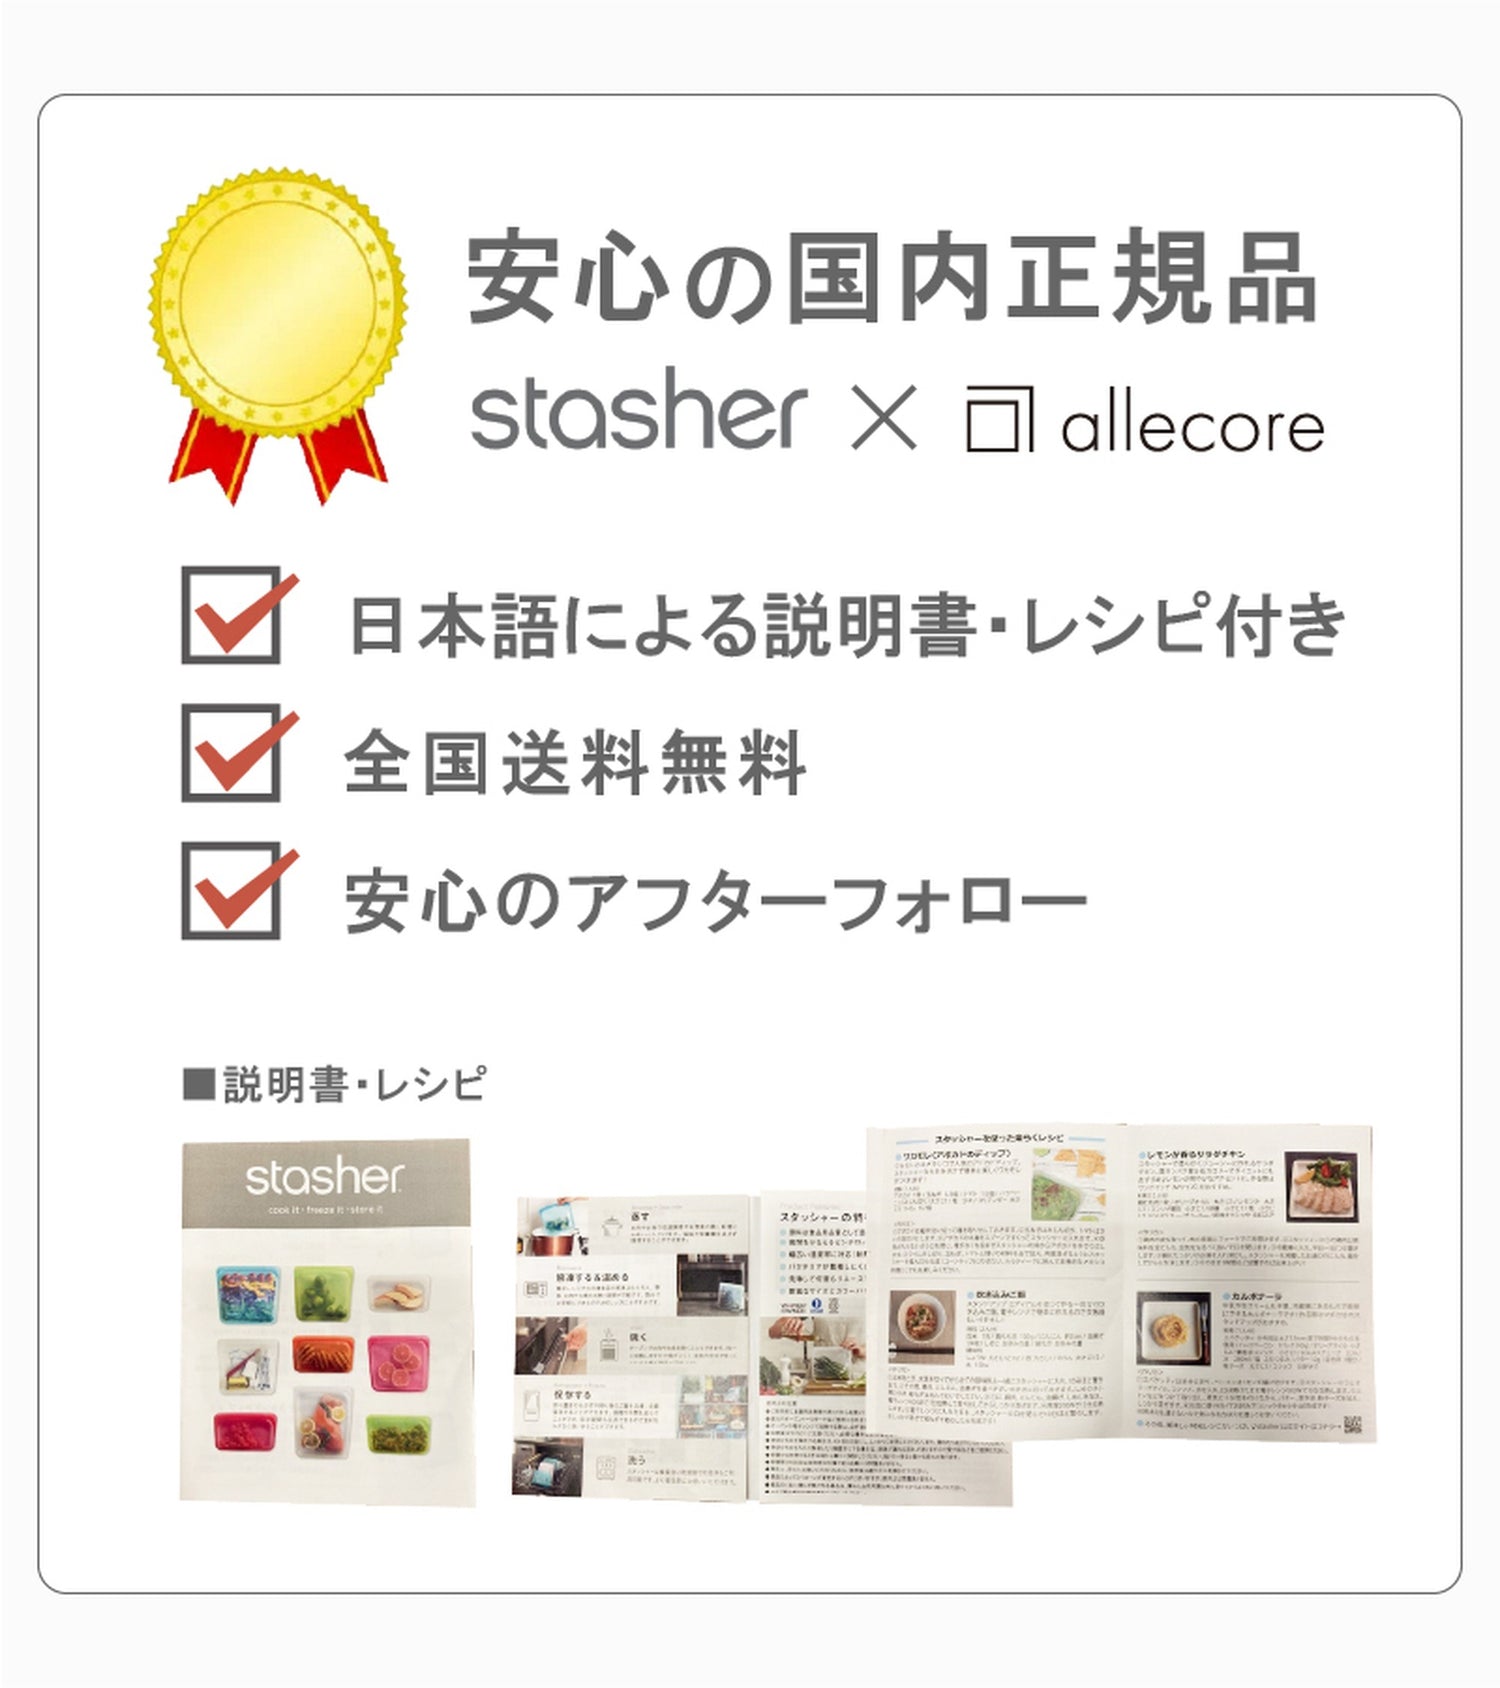 【3個セット】スタッシャー シリコンバッグ stasher 日本正規品 スタンドアップ Mサイズ 6色